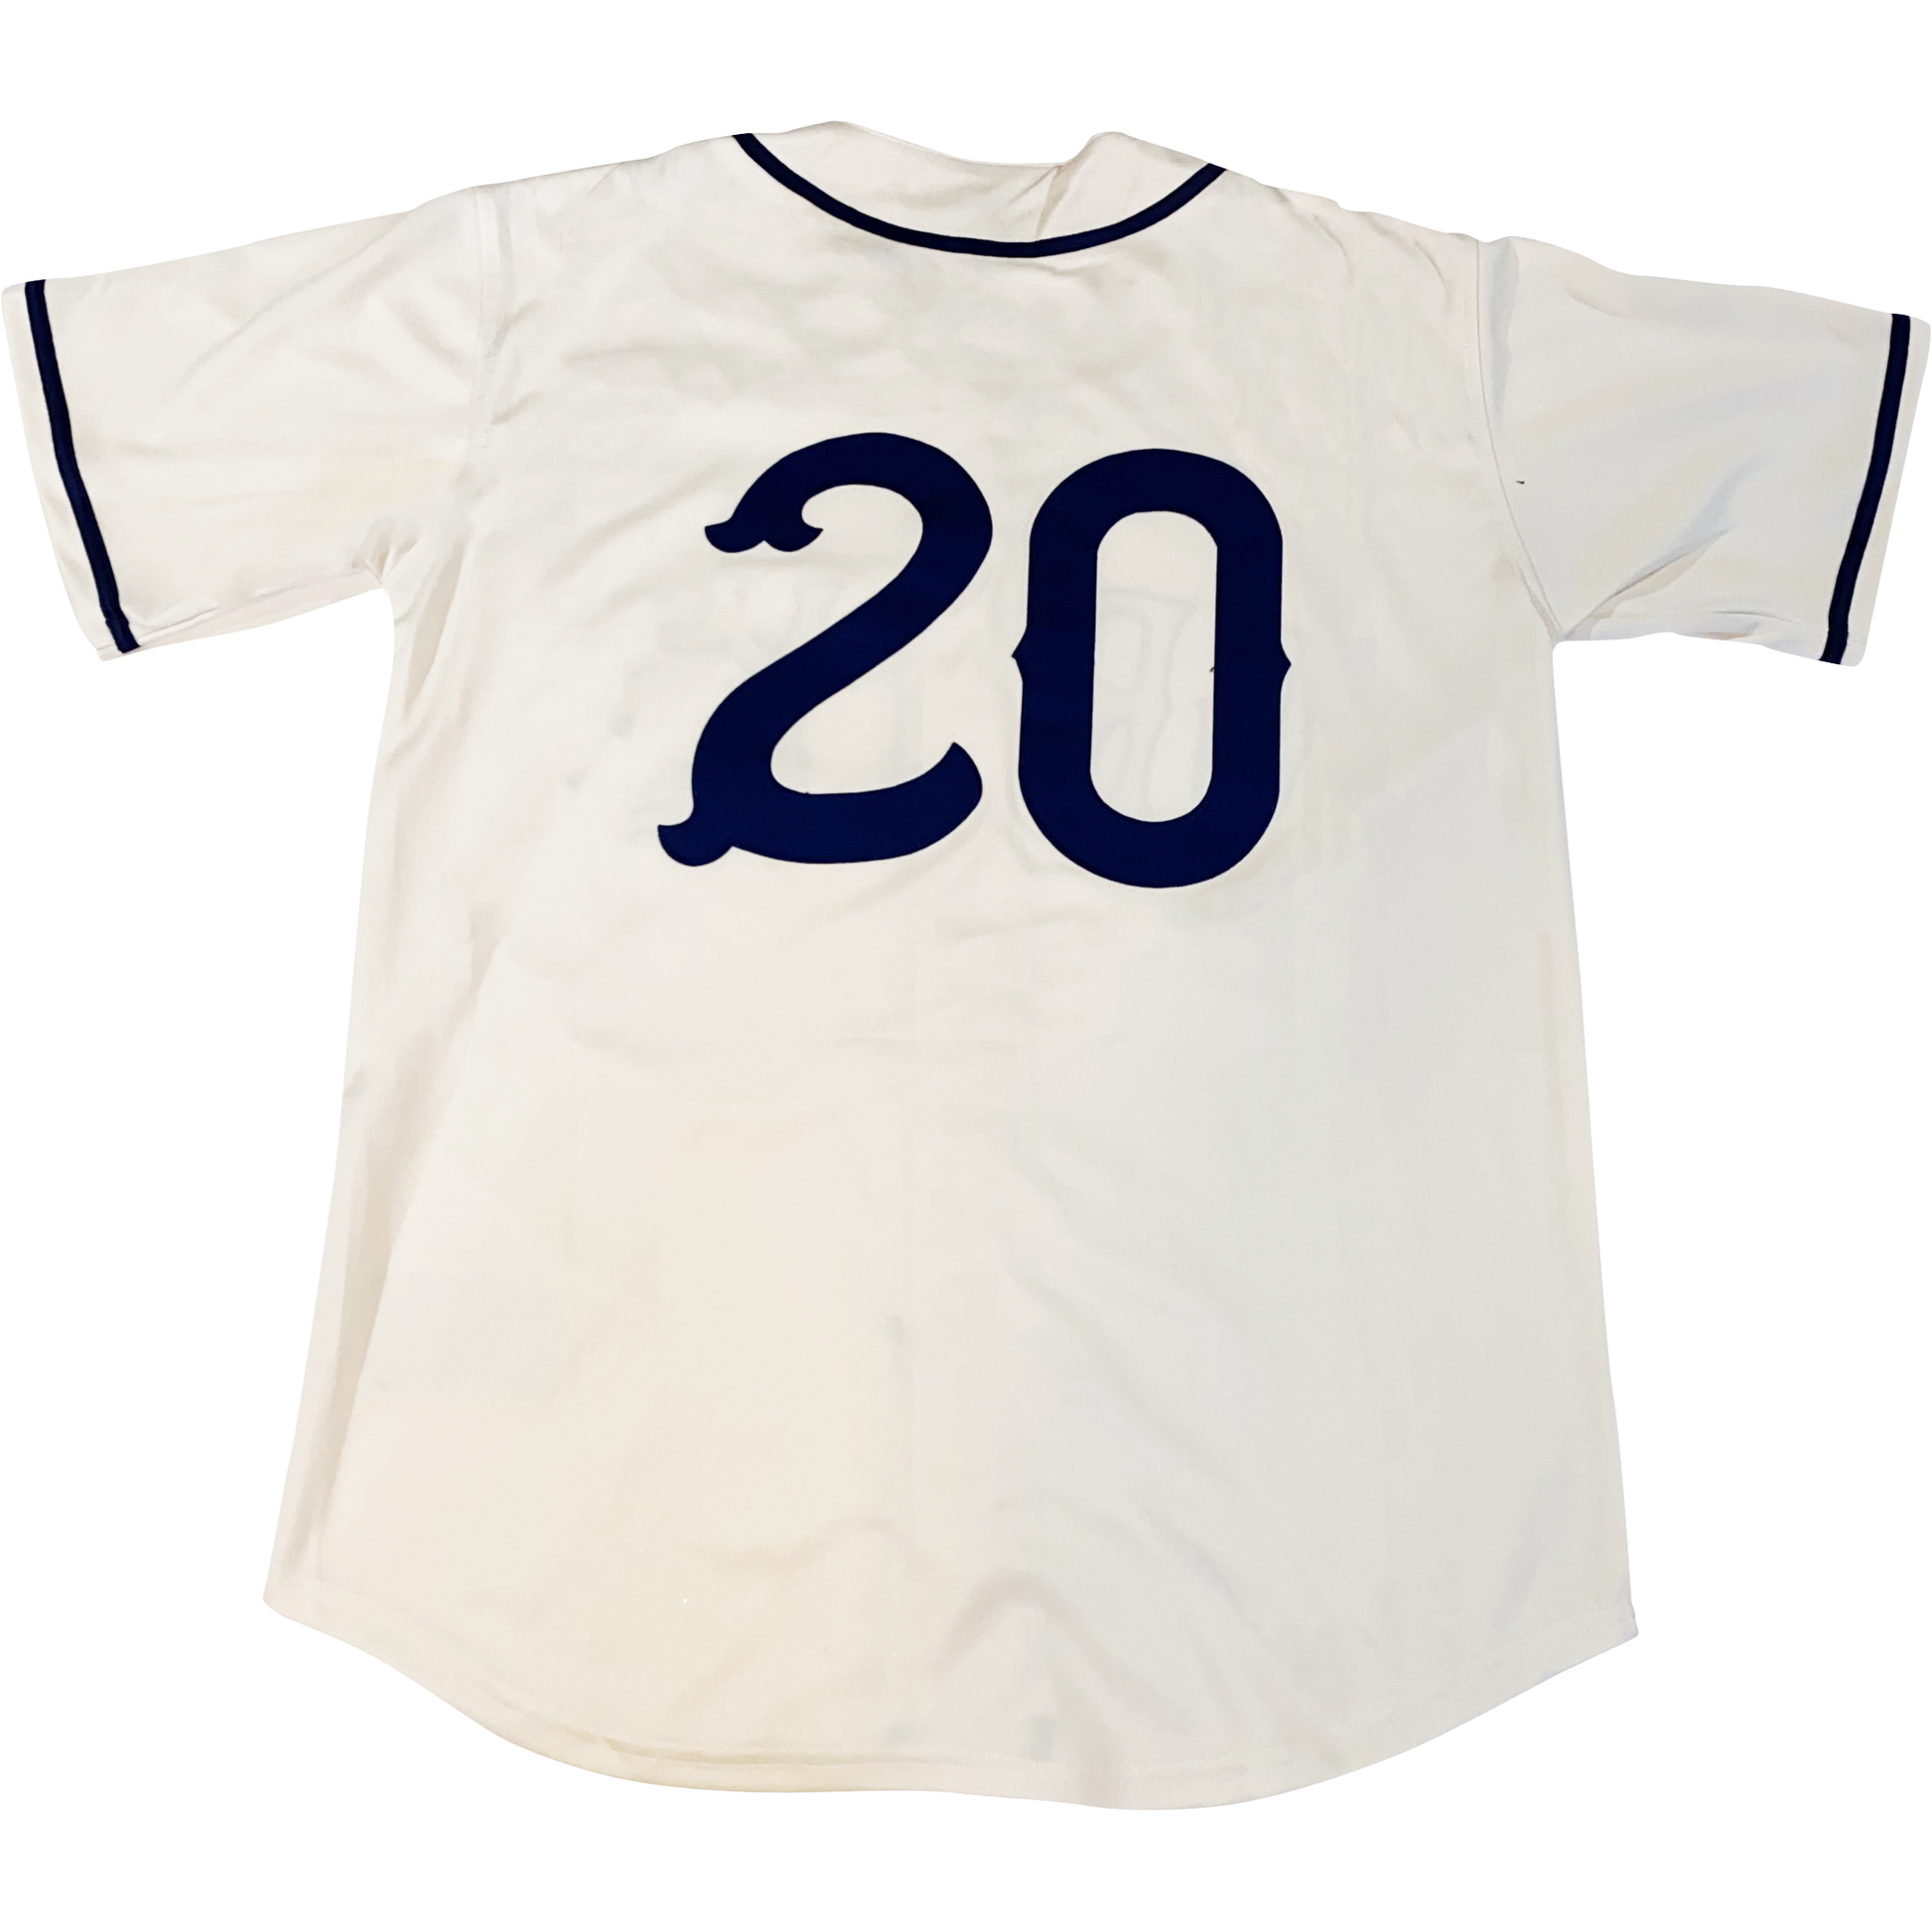 Shirts & Tops, Nlb Baseball Jersey